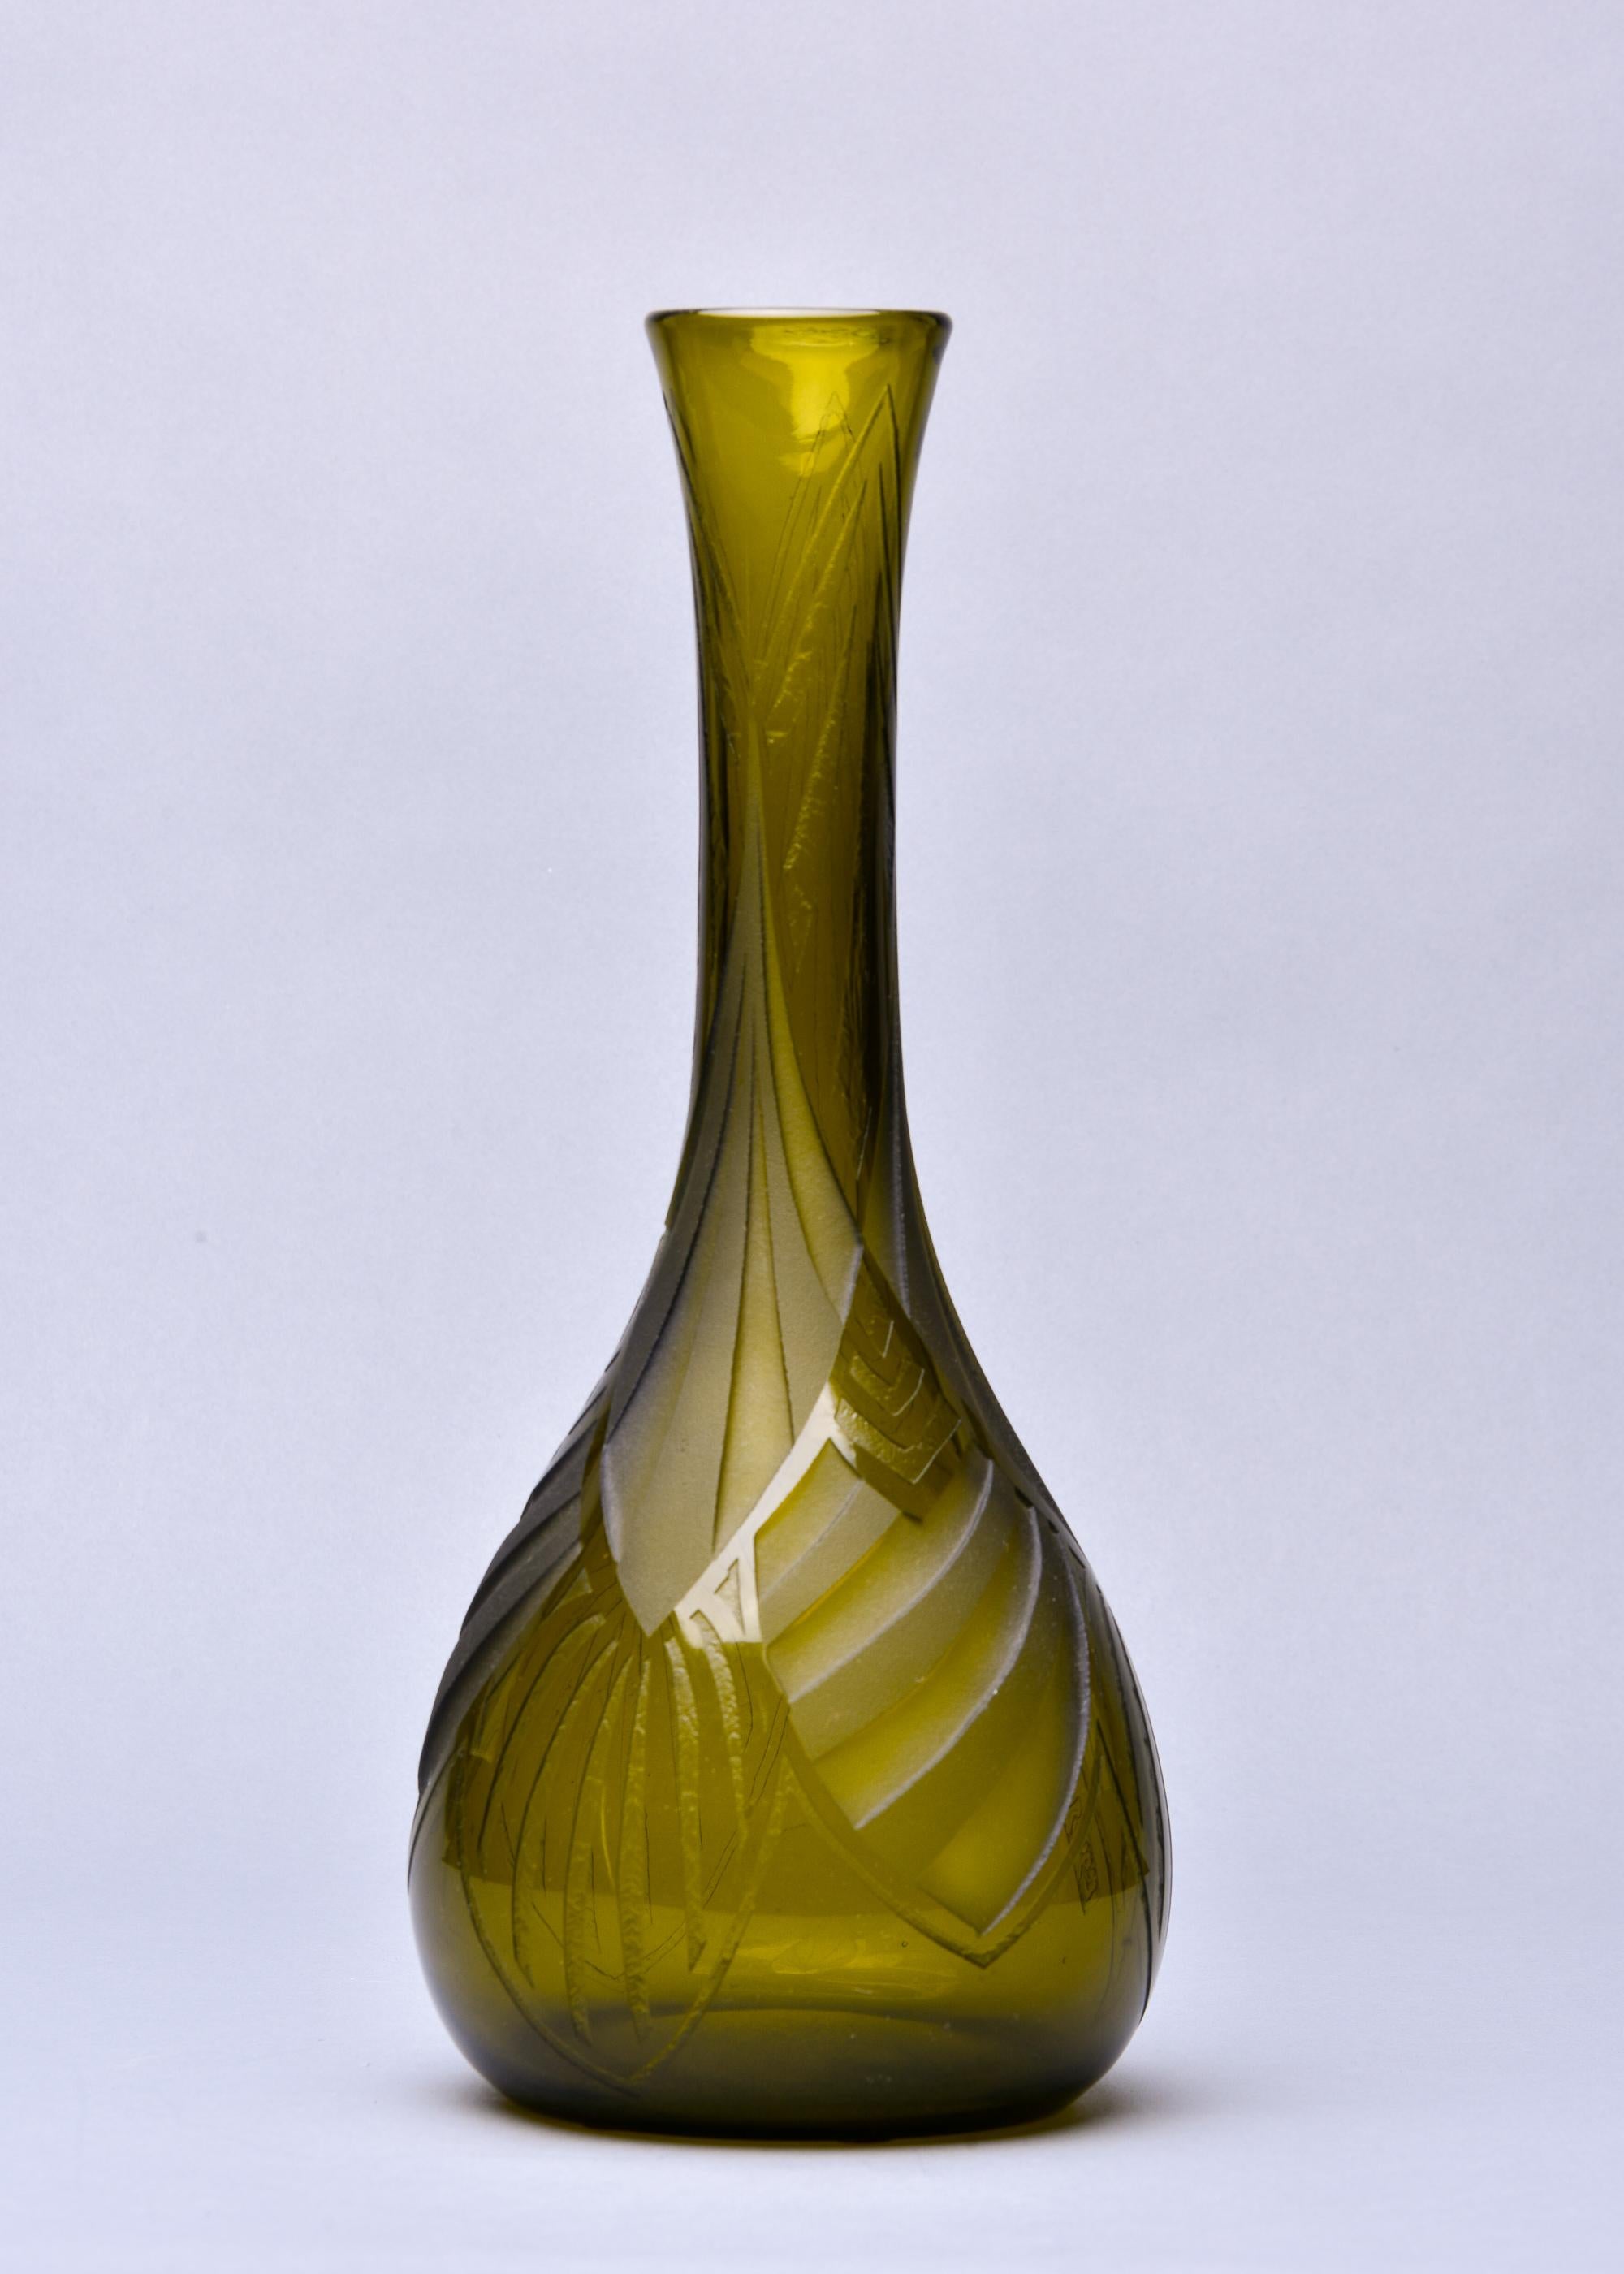 Signed Legras Acid Engraved Art Deco Glass Vase For Sale 1